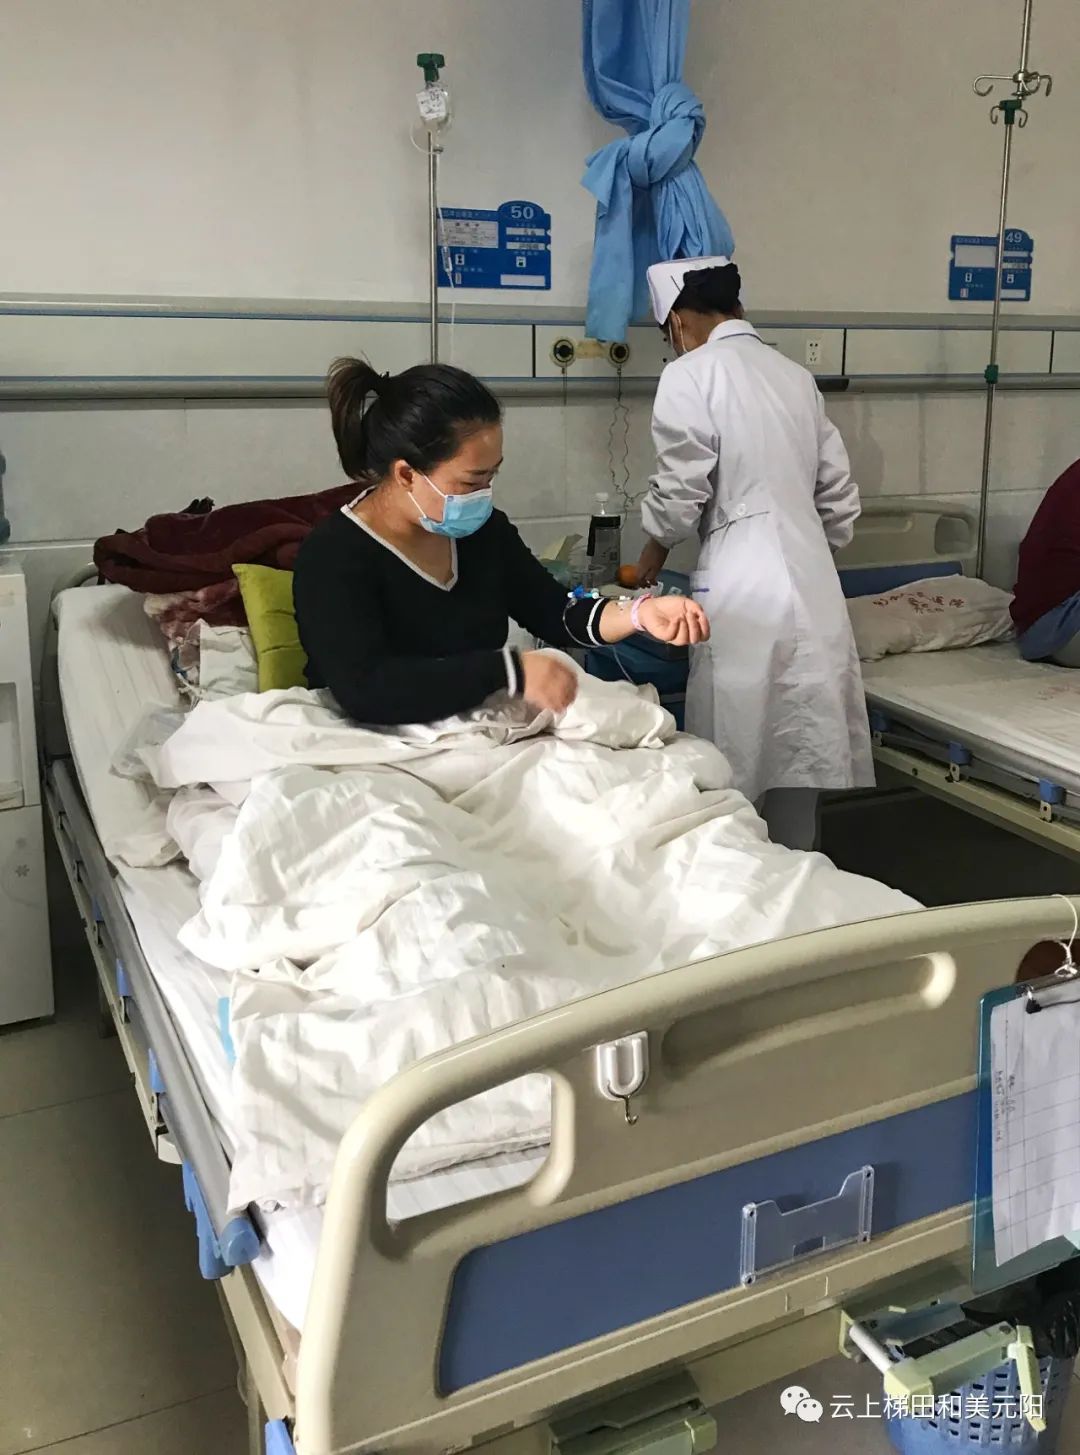 患者刘玲正在打针在县人民医院住院部,护士正在为刘玲输液